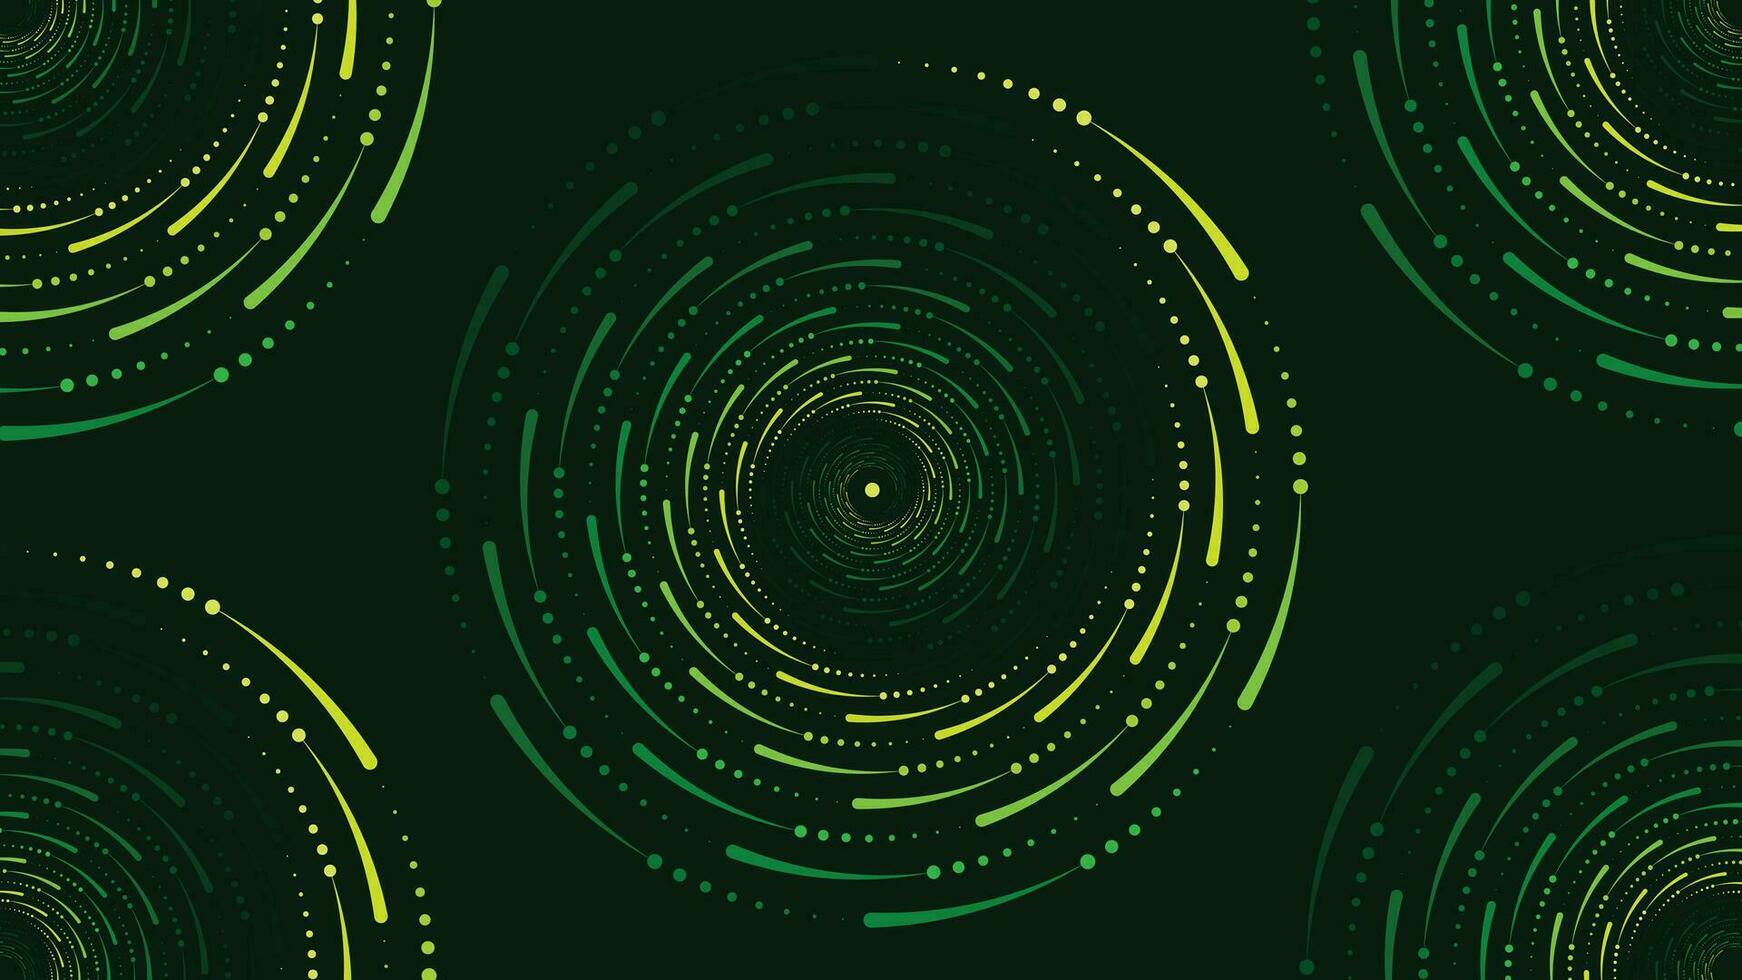 Abstarct spiral vortex style spinning background in dark green color. vector